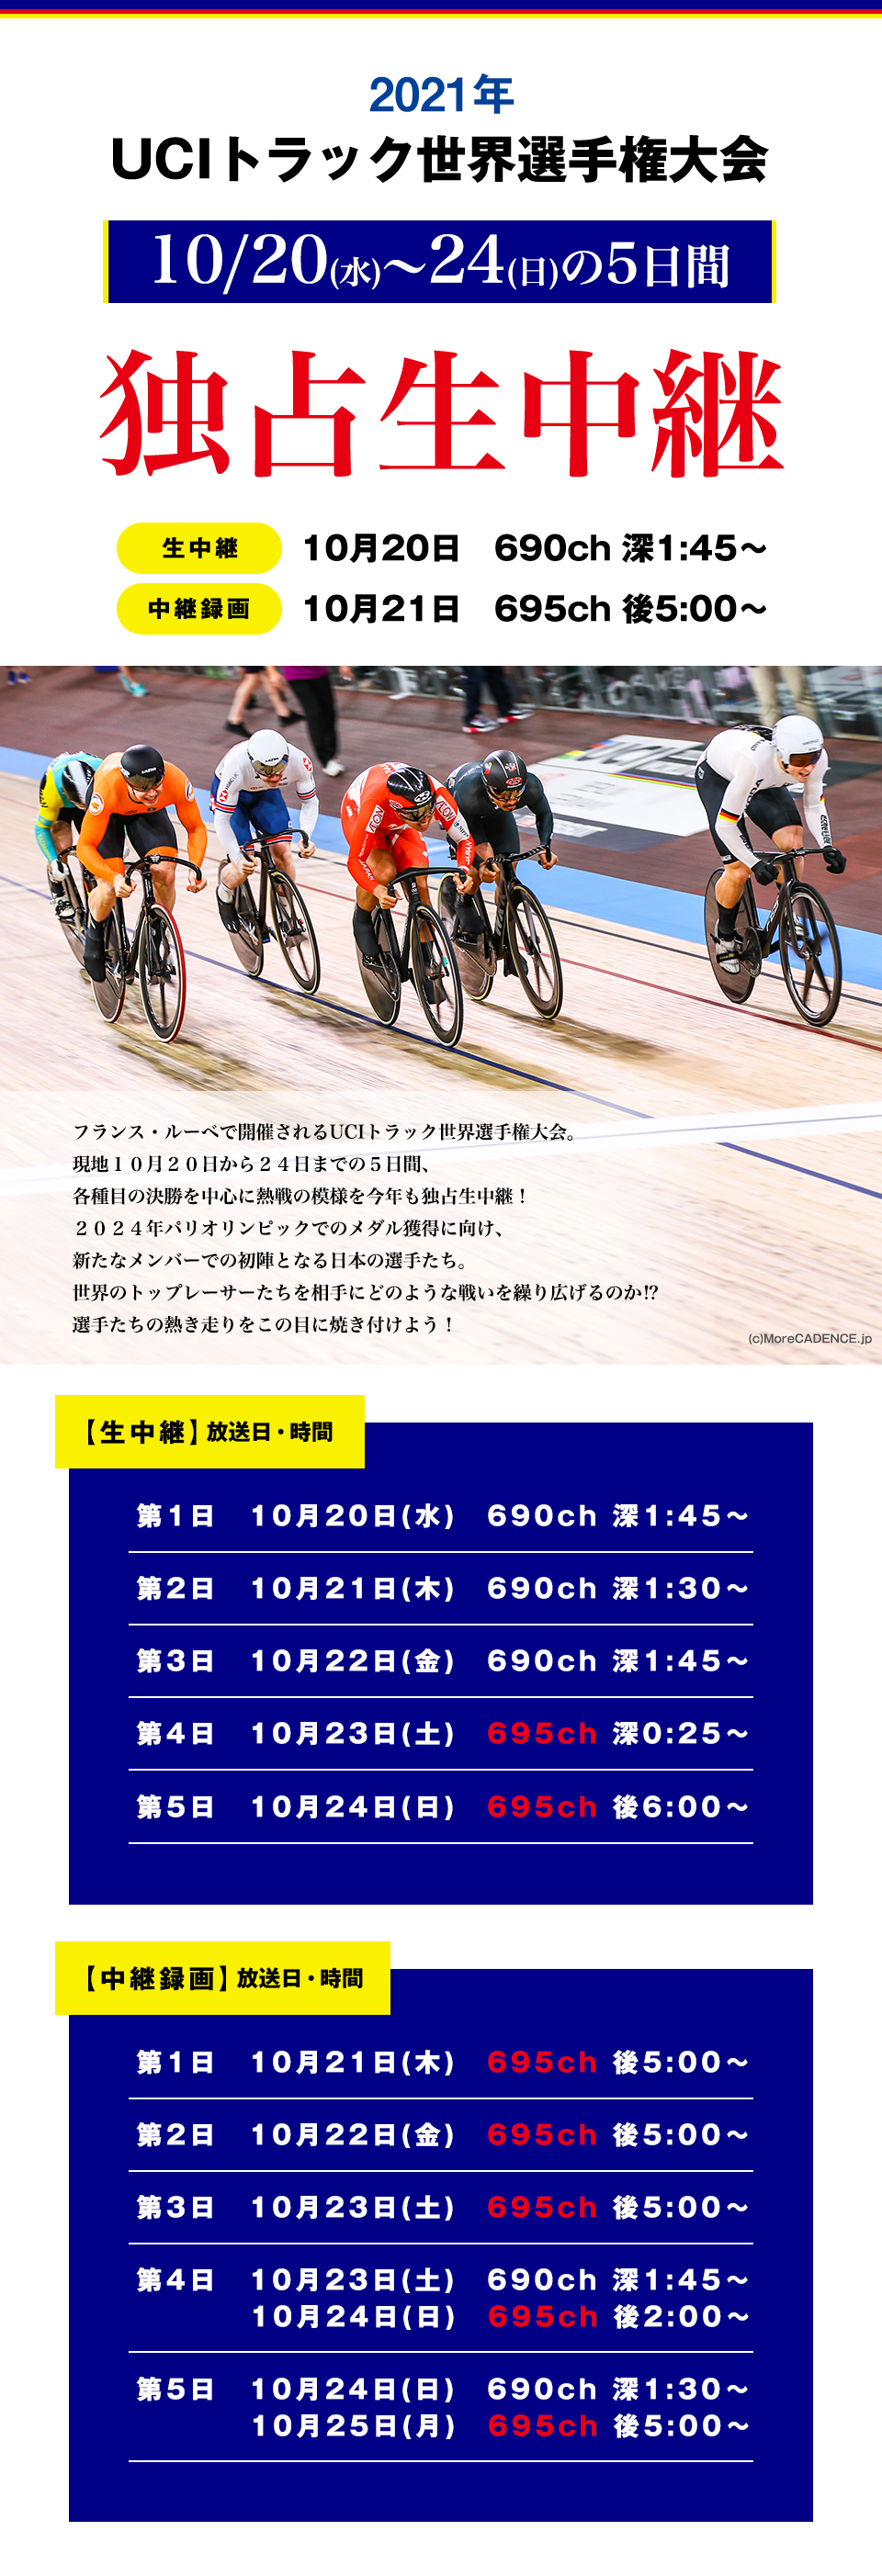 2020年UCIトラック世界選手権大会